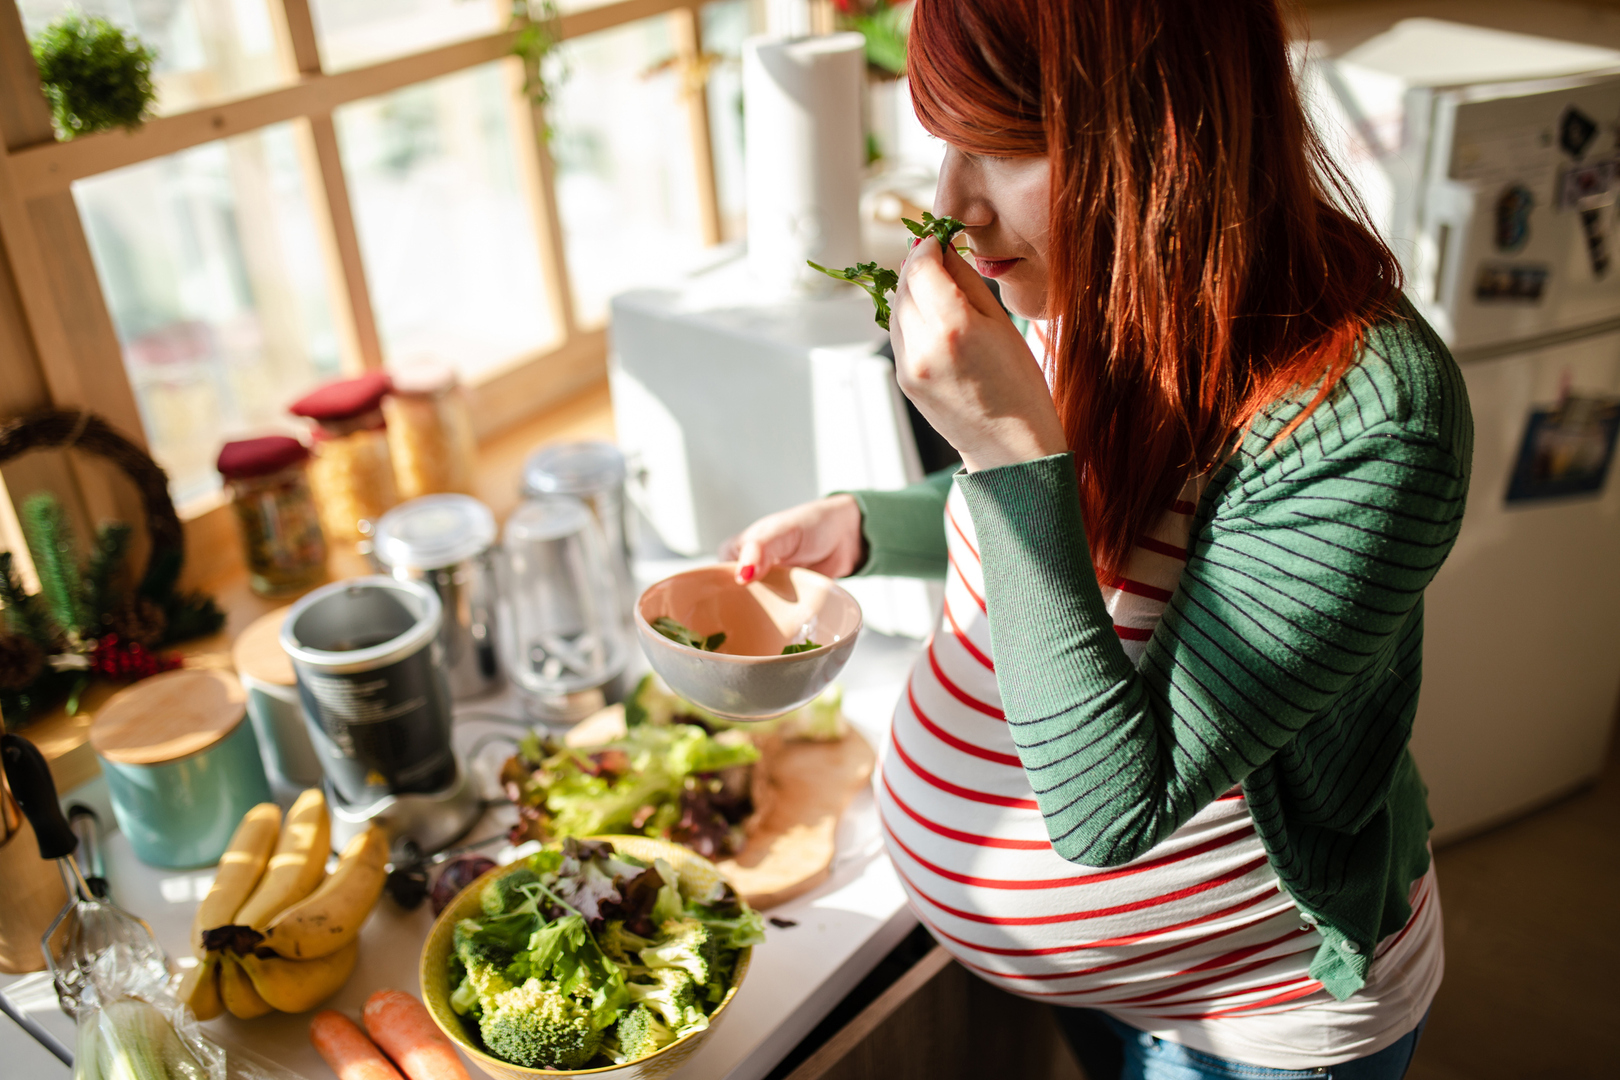 أطعمة يجب على الحوامل تجنبها للحفاظ على صحتهن